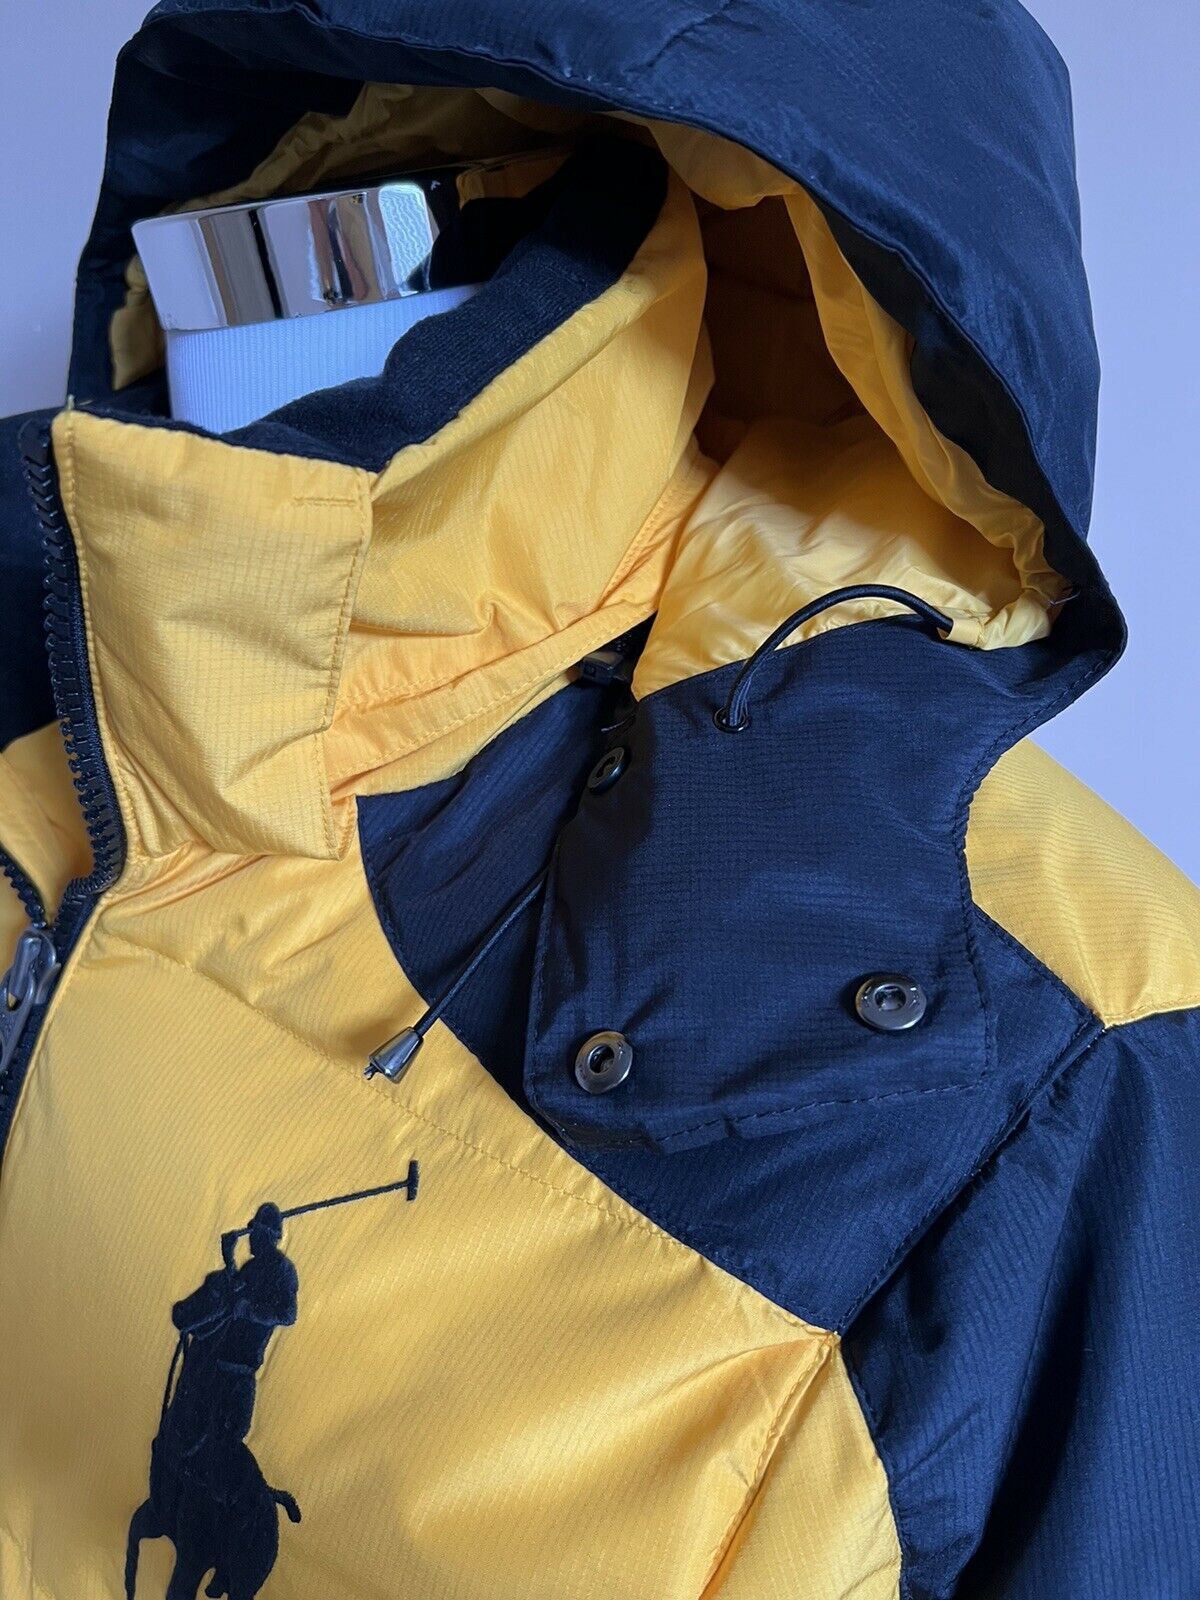 Мужская парка с капюшоном желтого/черного цвета Polo Ralph Lauren, размер NWT 348 долларов США, средняя куртка